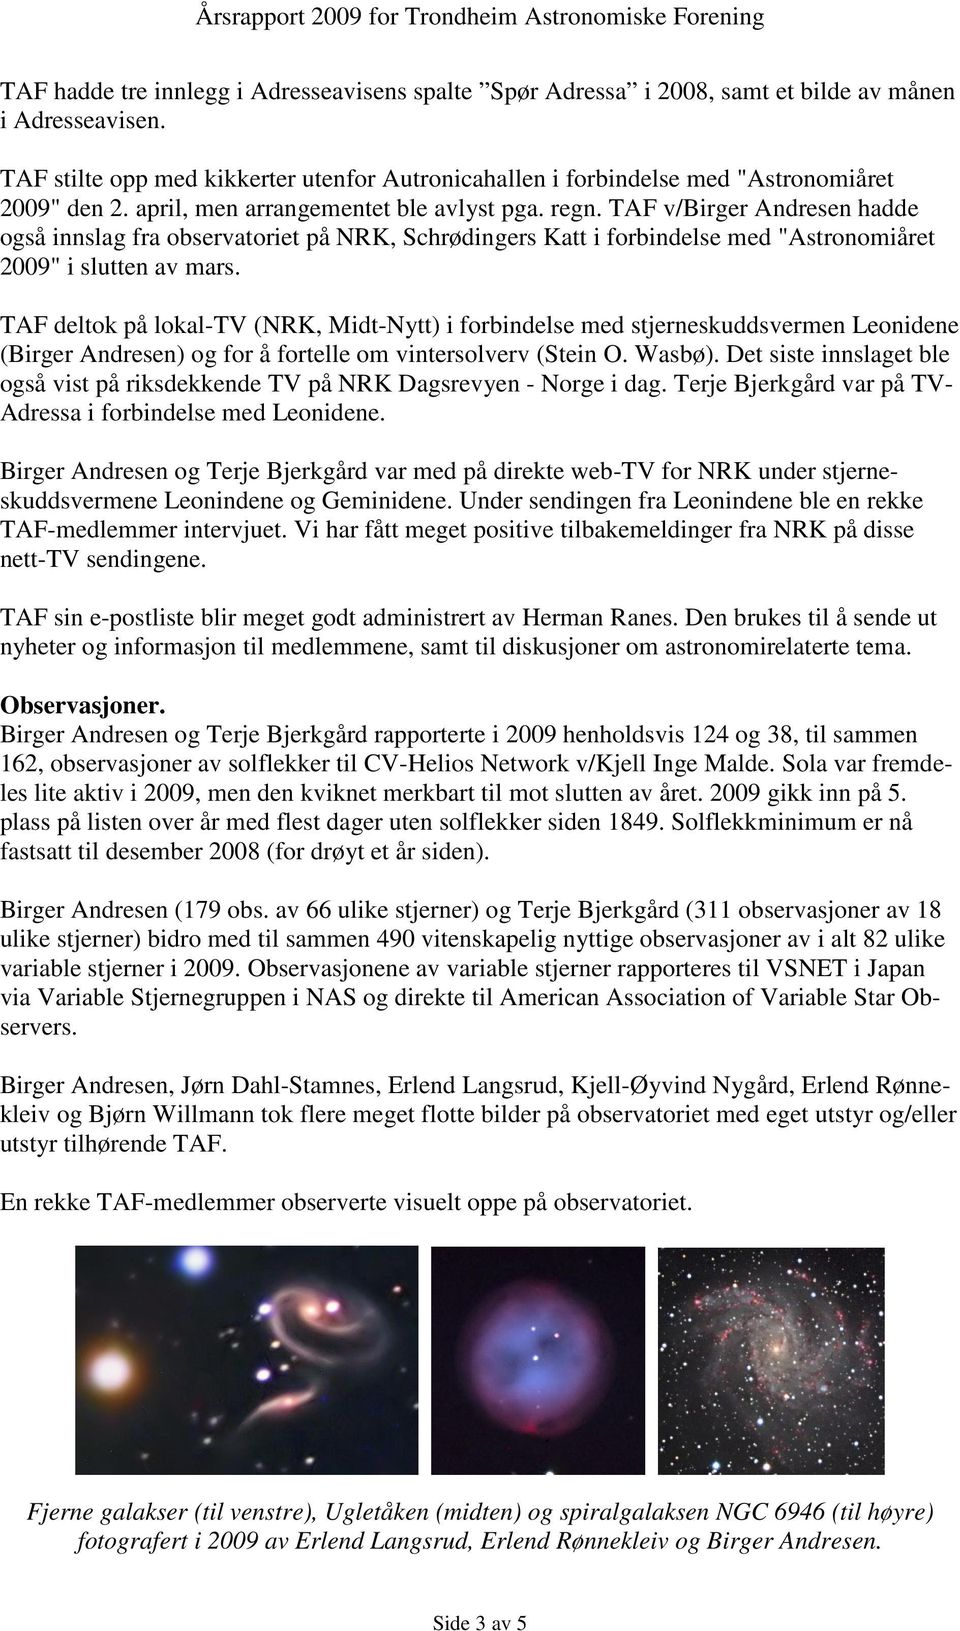 TAF v/birger Andresen hadde også innslag fra observatoriet på NRK, Schrødingers Katt i forbindelse med "Astronomiåret 2009" i slutten av mars.